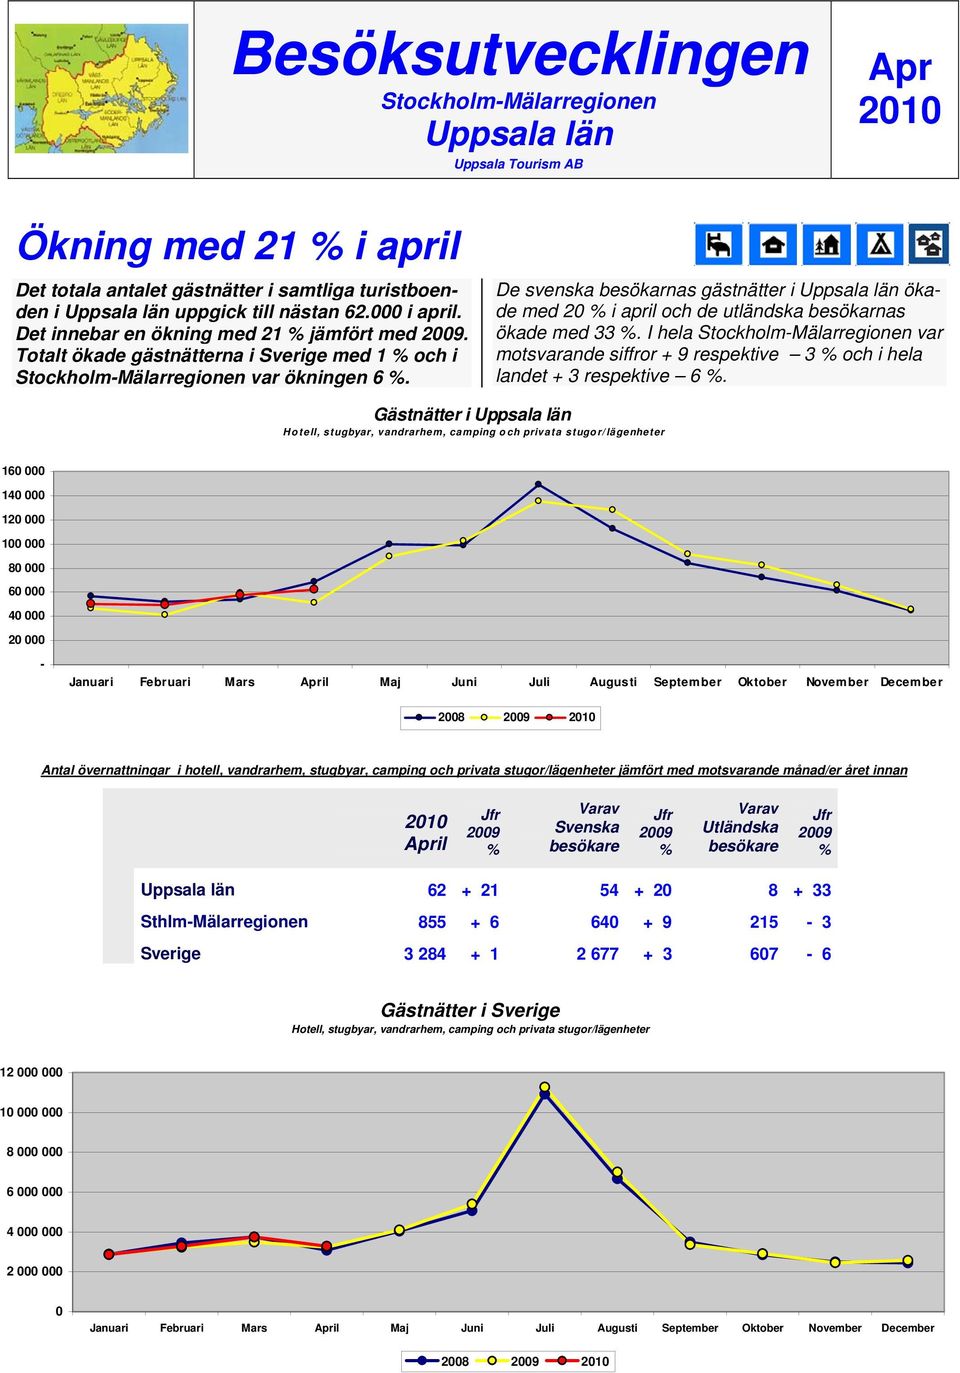 De svenska besökarnas gästnätter i Uppsala län ökade med 20 i april och de utländska besökarnas ökade med 33.